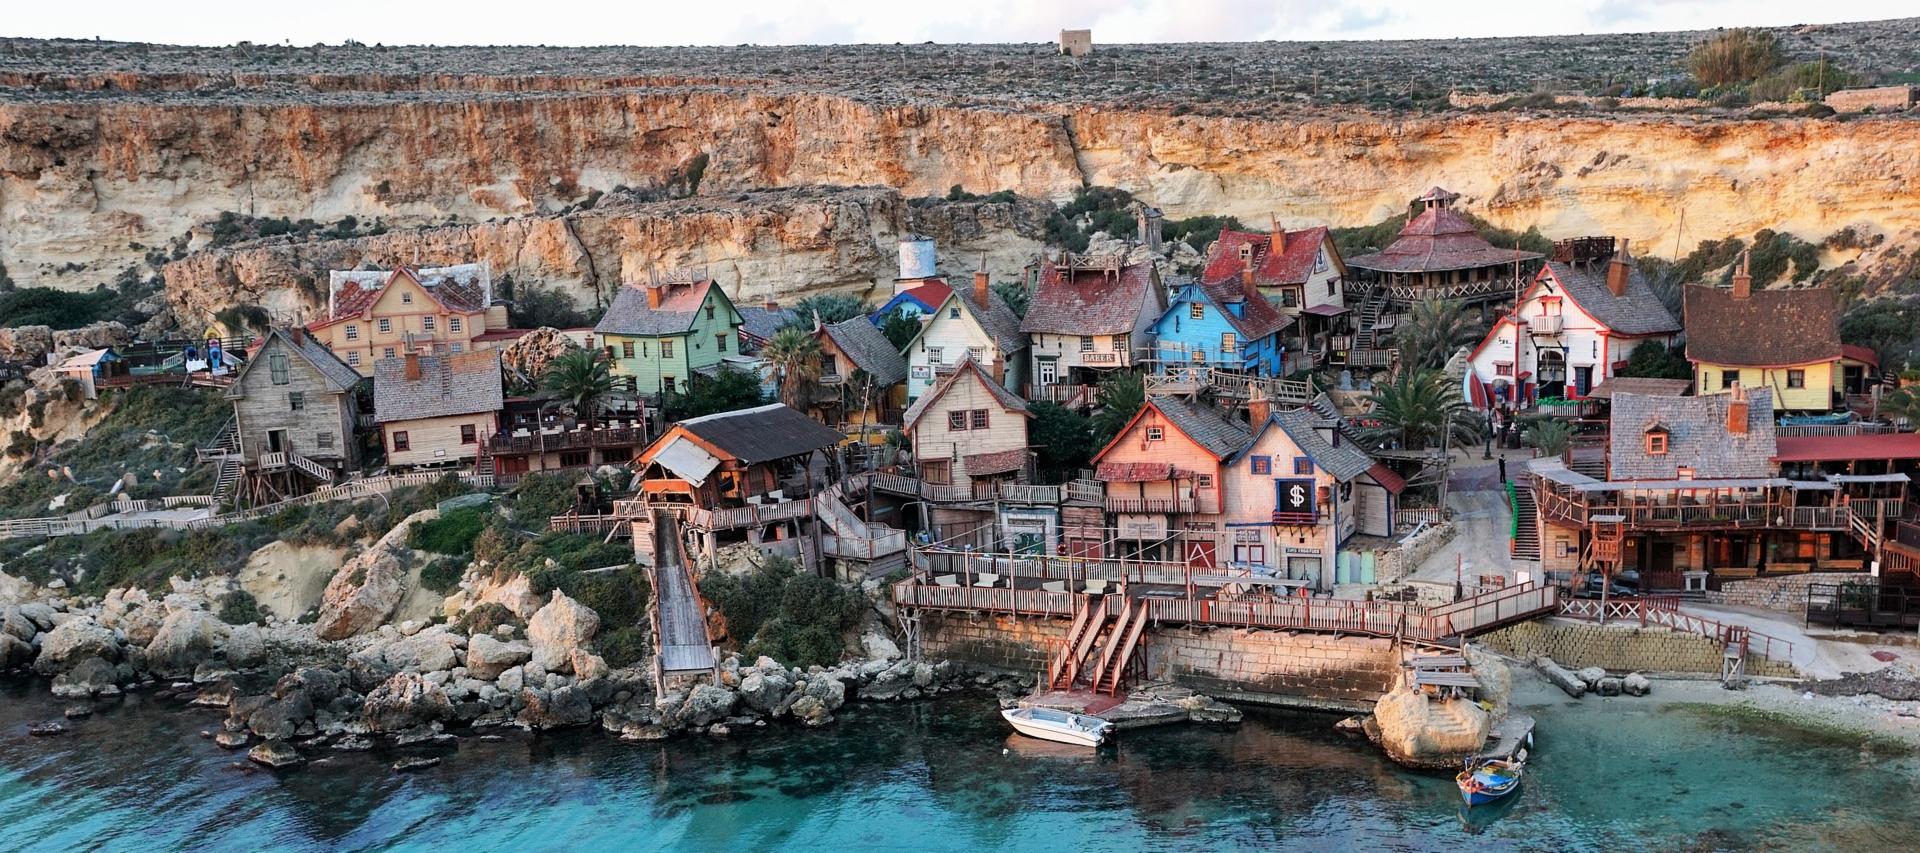 Popeye Village in Malta